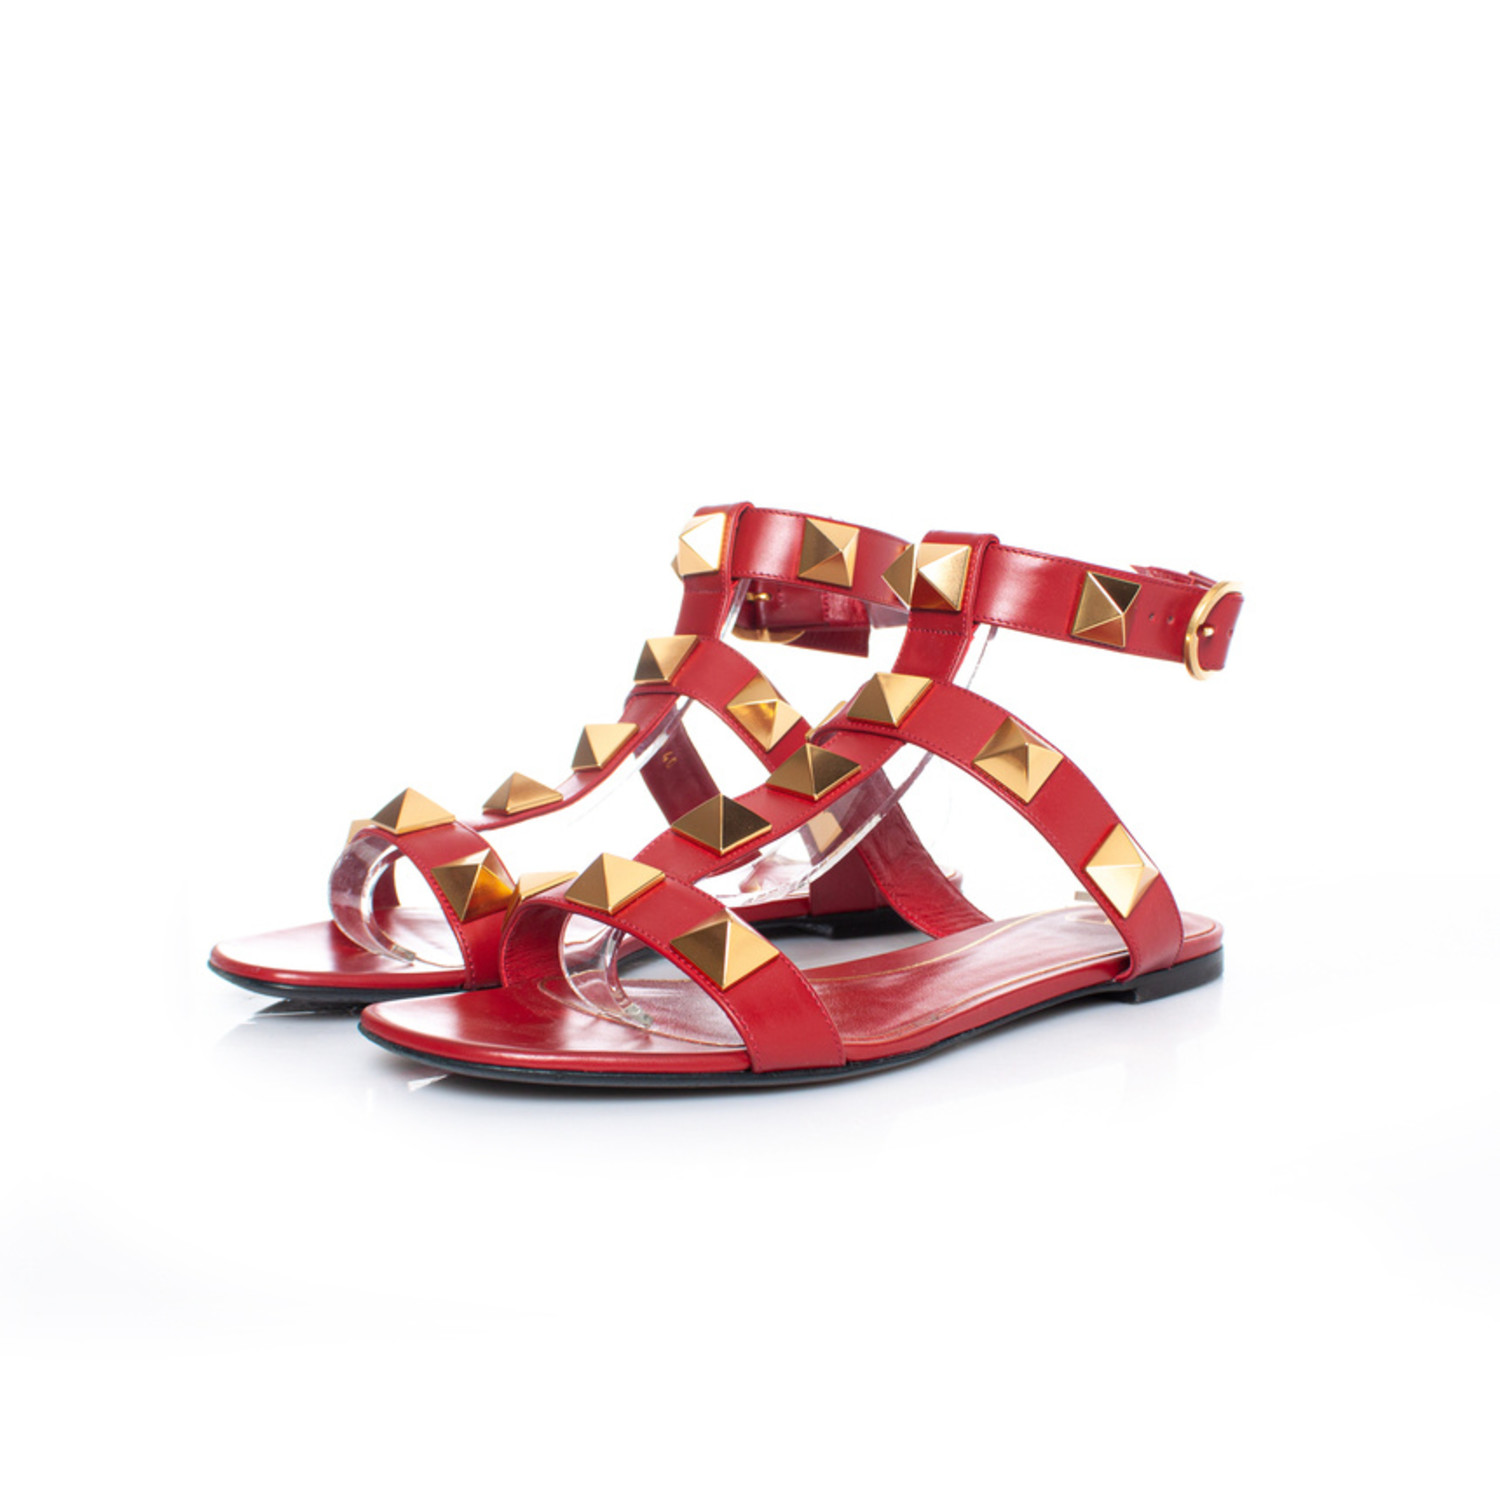 kedel ambition Preference Valentino Garavani, Roman stud sandal in red - Unique Designer Pieces